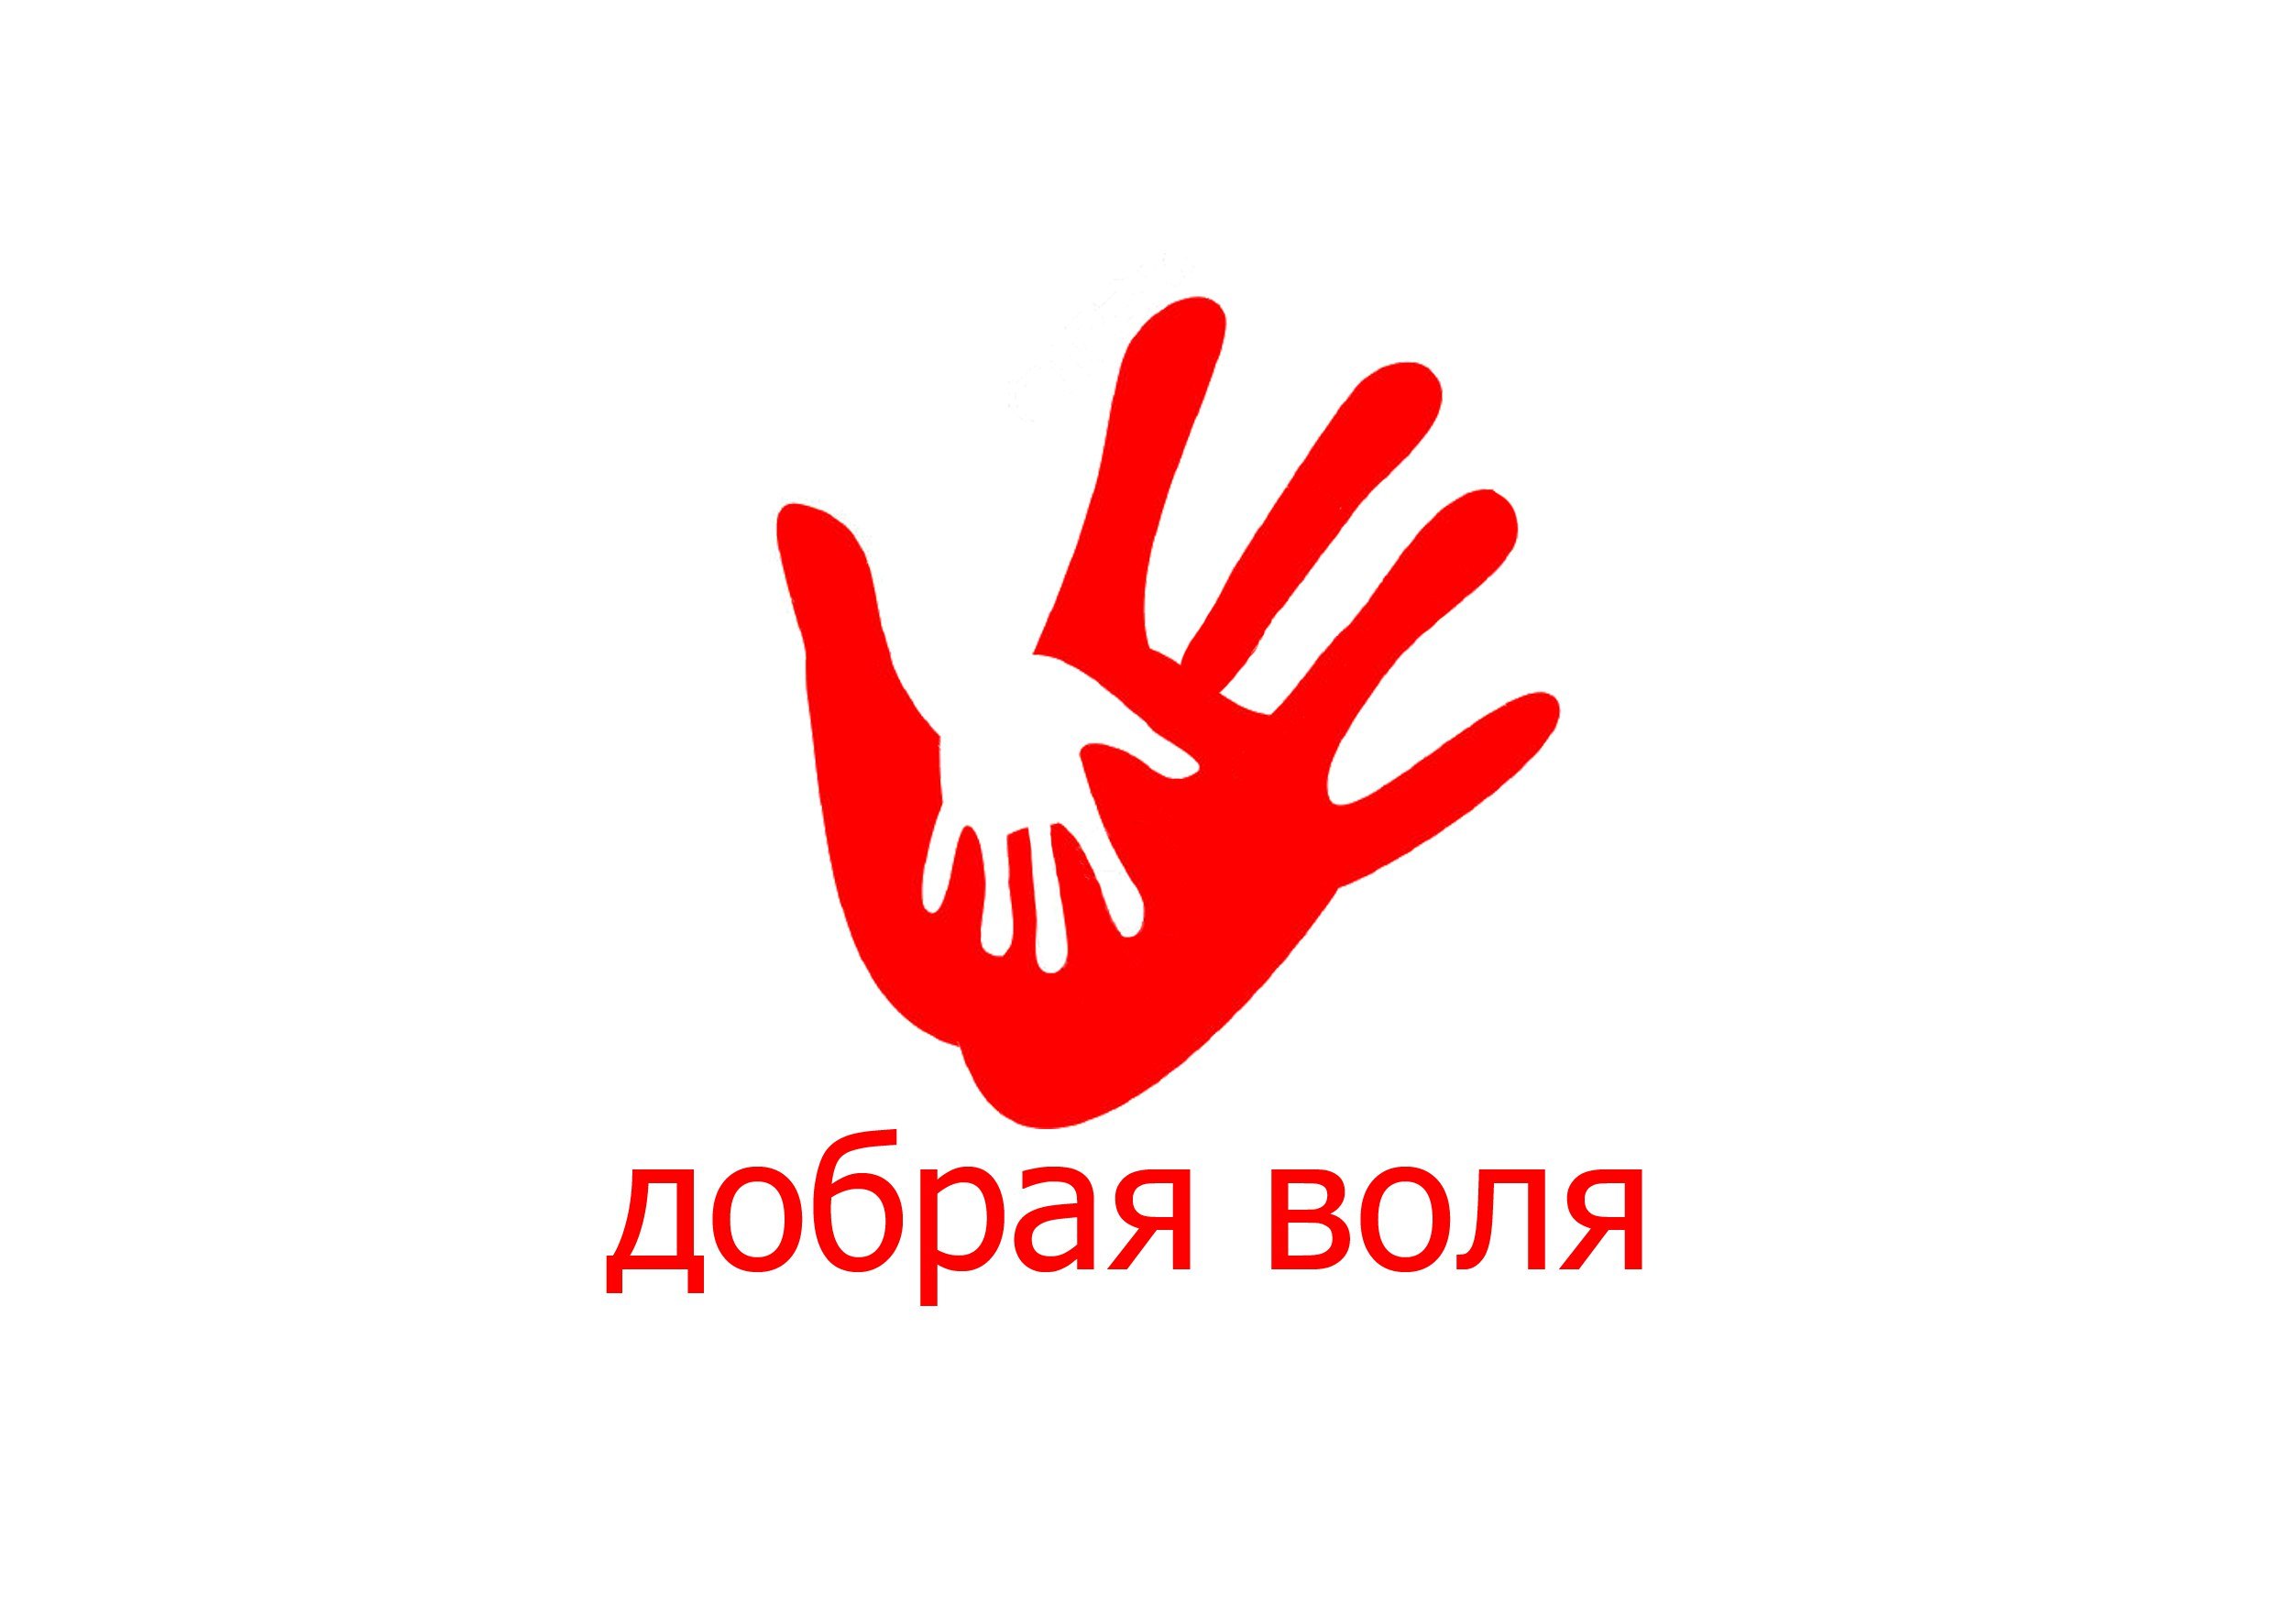 Доброволец. Знак волонтера. Логотип волонтеров. Символ волонтеров России. Символ волонтерского движения.